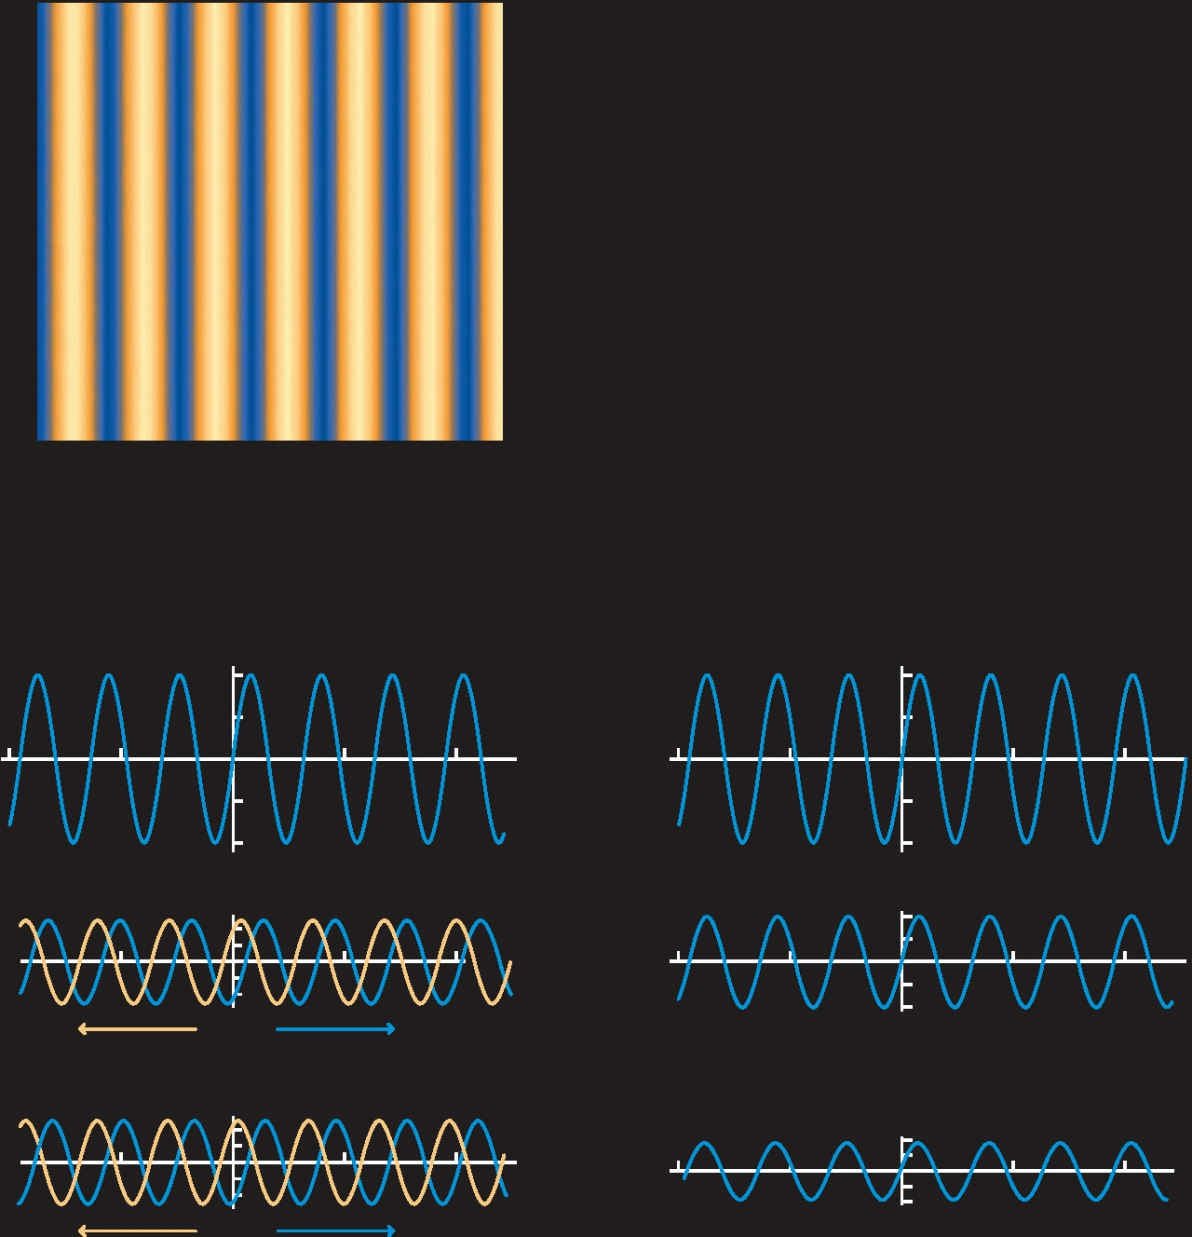  驻波在原始等离子体中是如何产生的上方图像代表的是平面波的一个截面